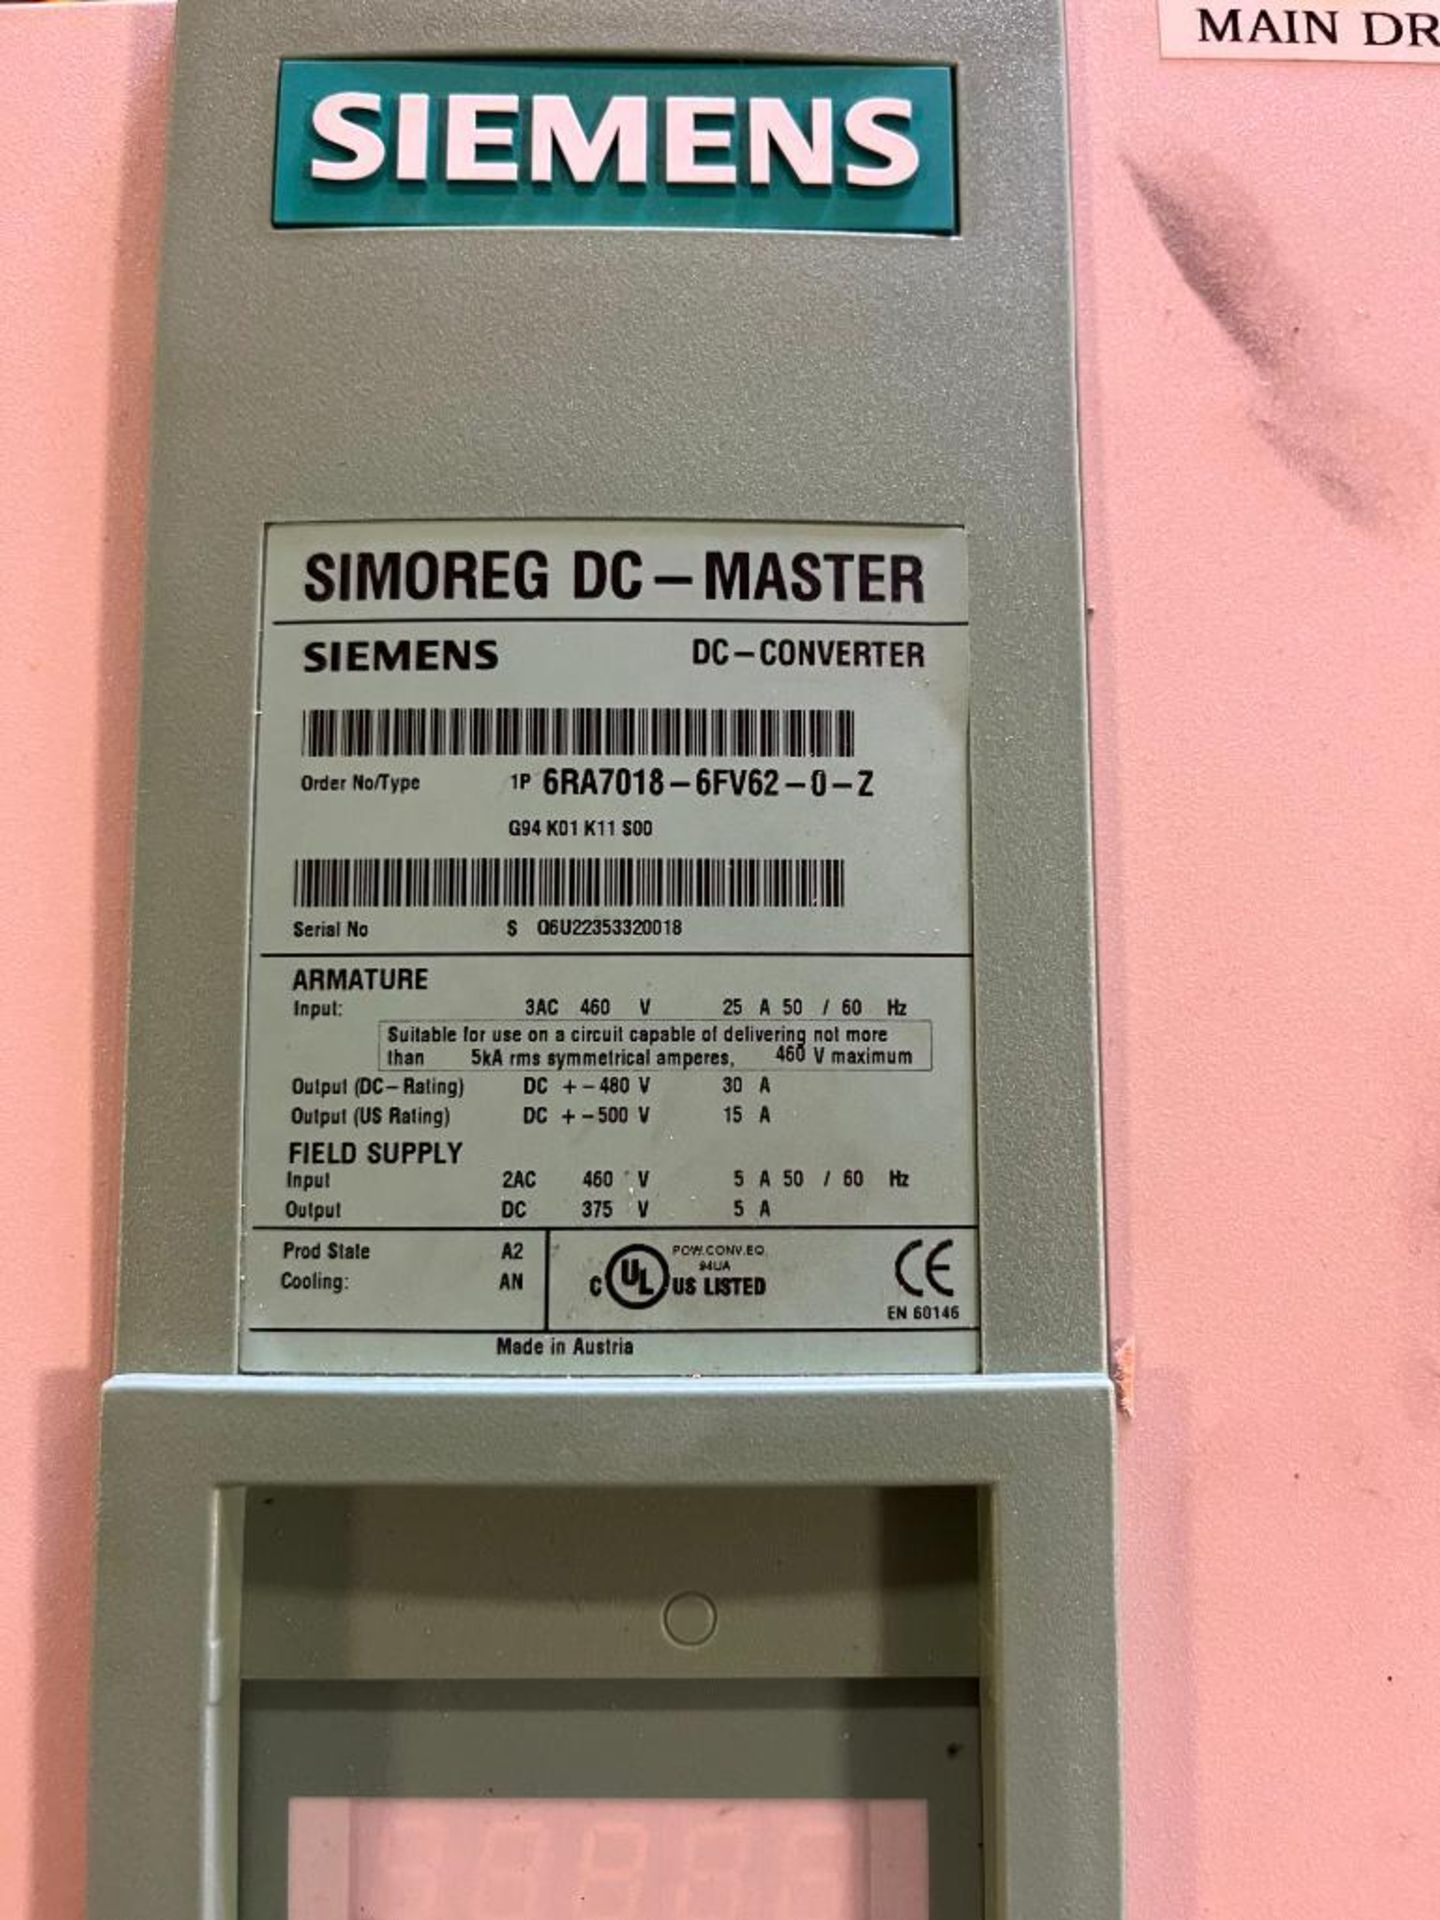 Siemens Simoreg DC-Master DC Converter, Order Number 6RA7018-6FV62-0-Z - Image 3 of 4